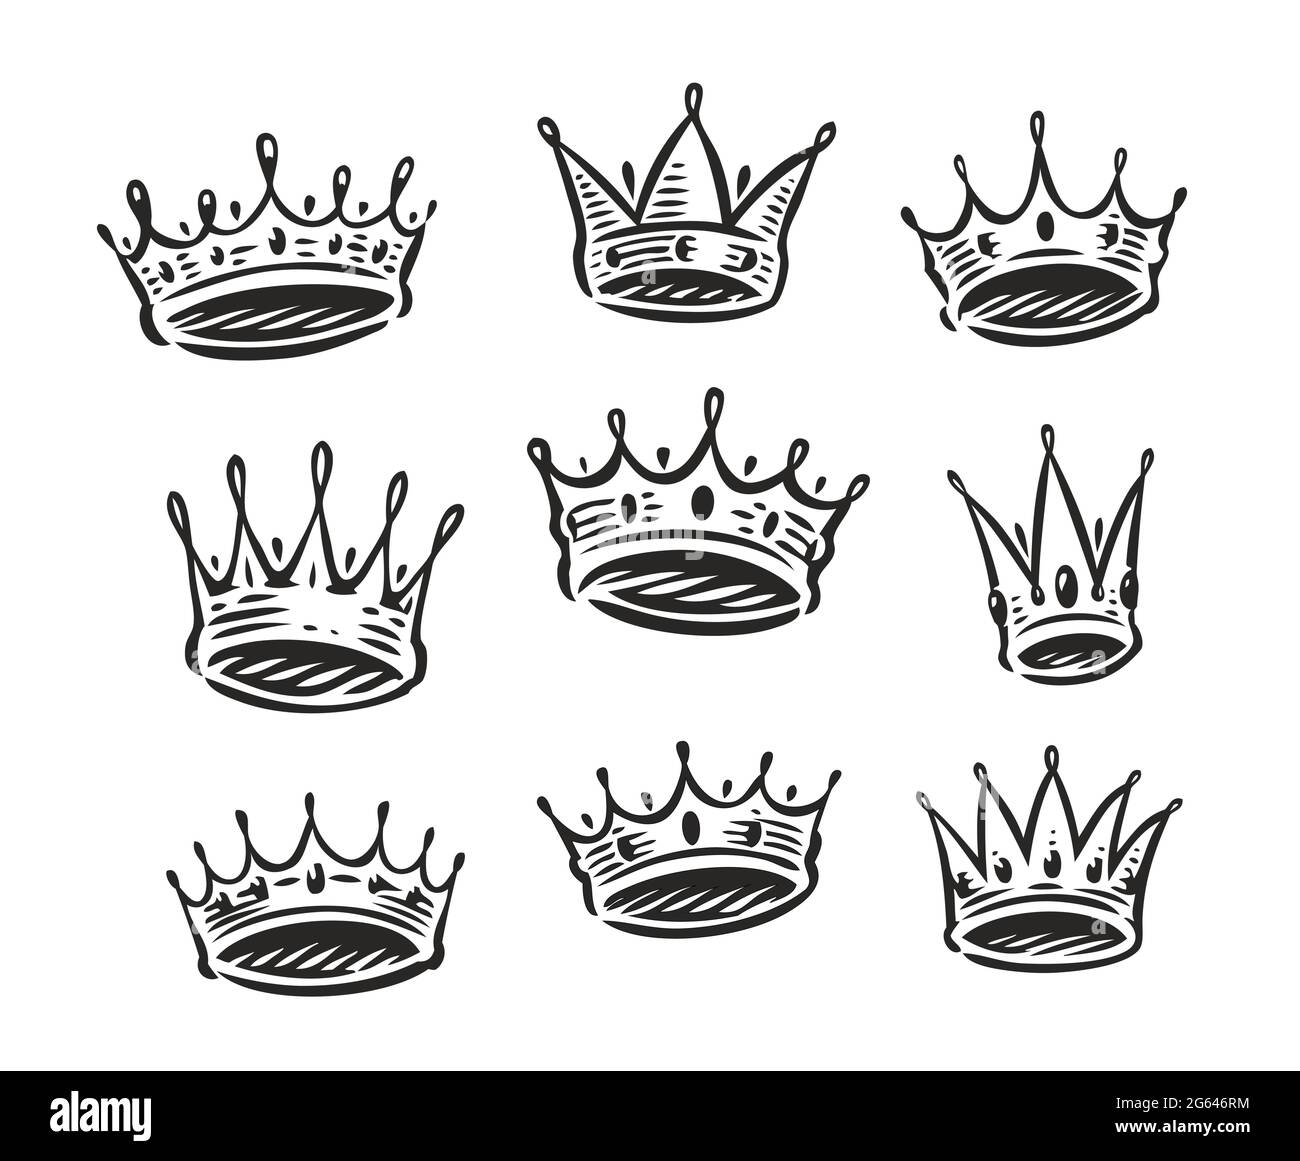 Jeu de symboles couronne. Royal, icône de luxe. Concept de lit king size ou queen size de couronnement Illustration de Vecteur